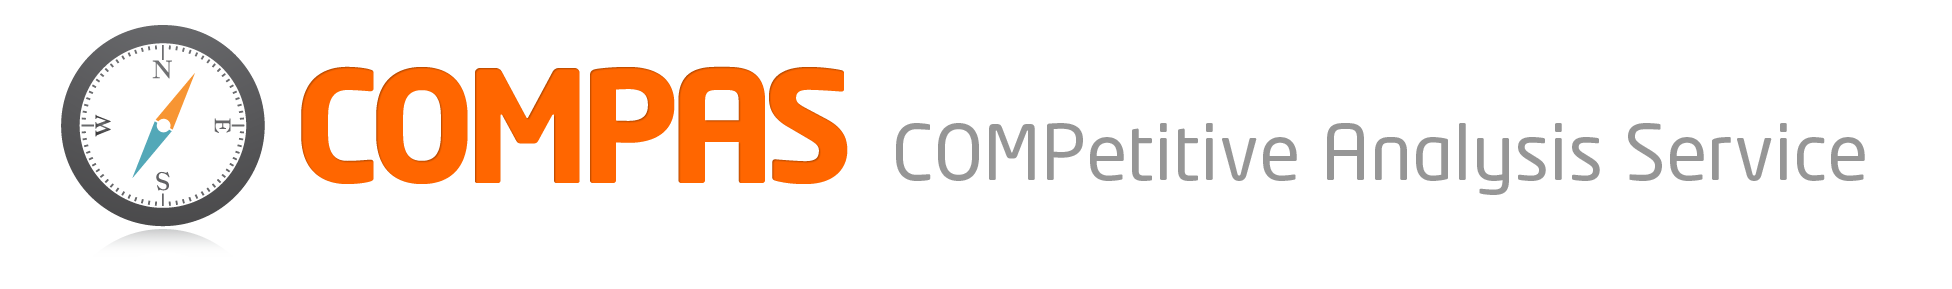 COMPAS 경쟁정보분석서비스 로고